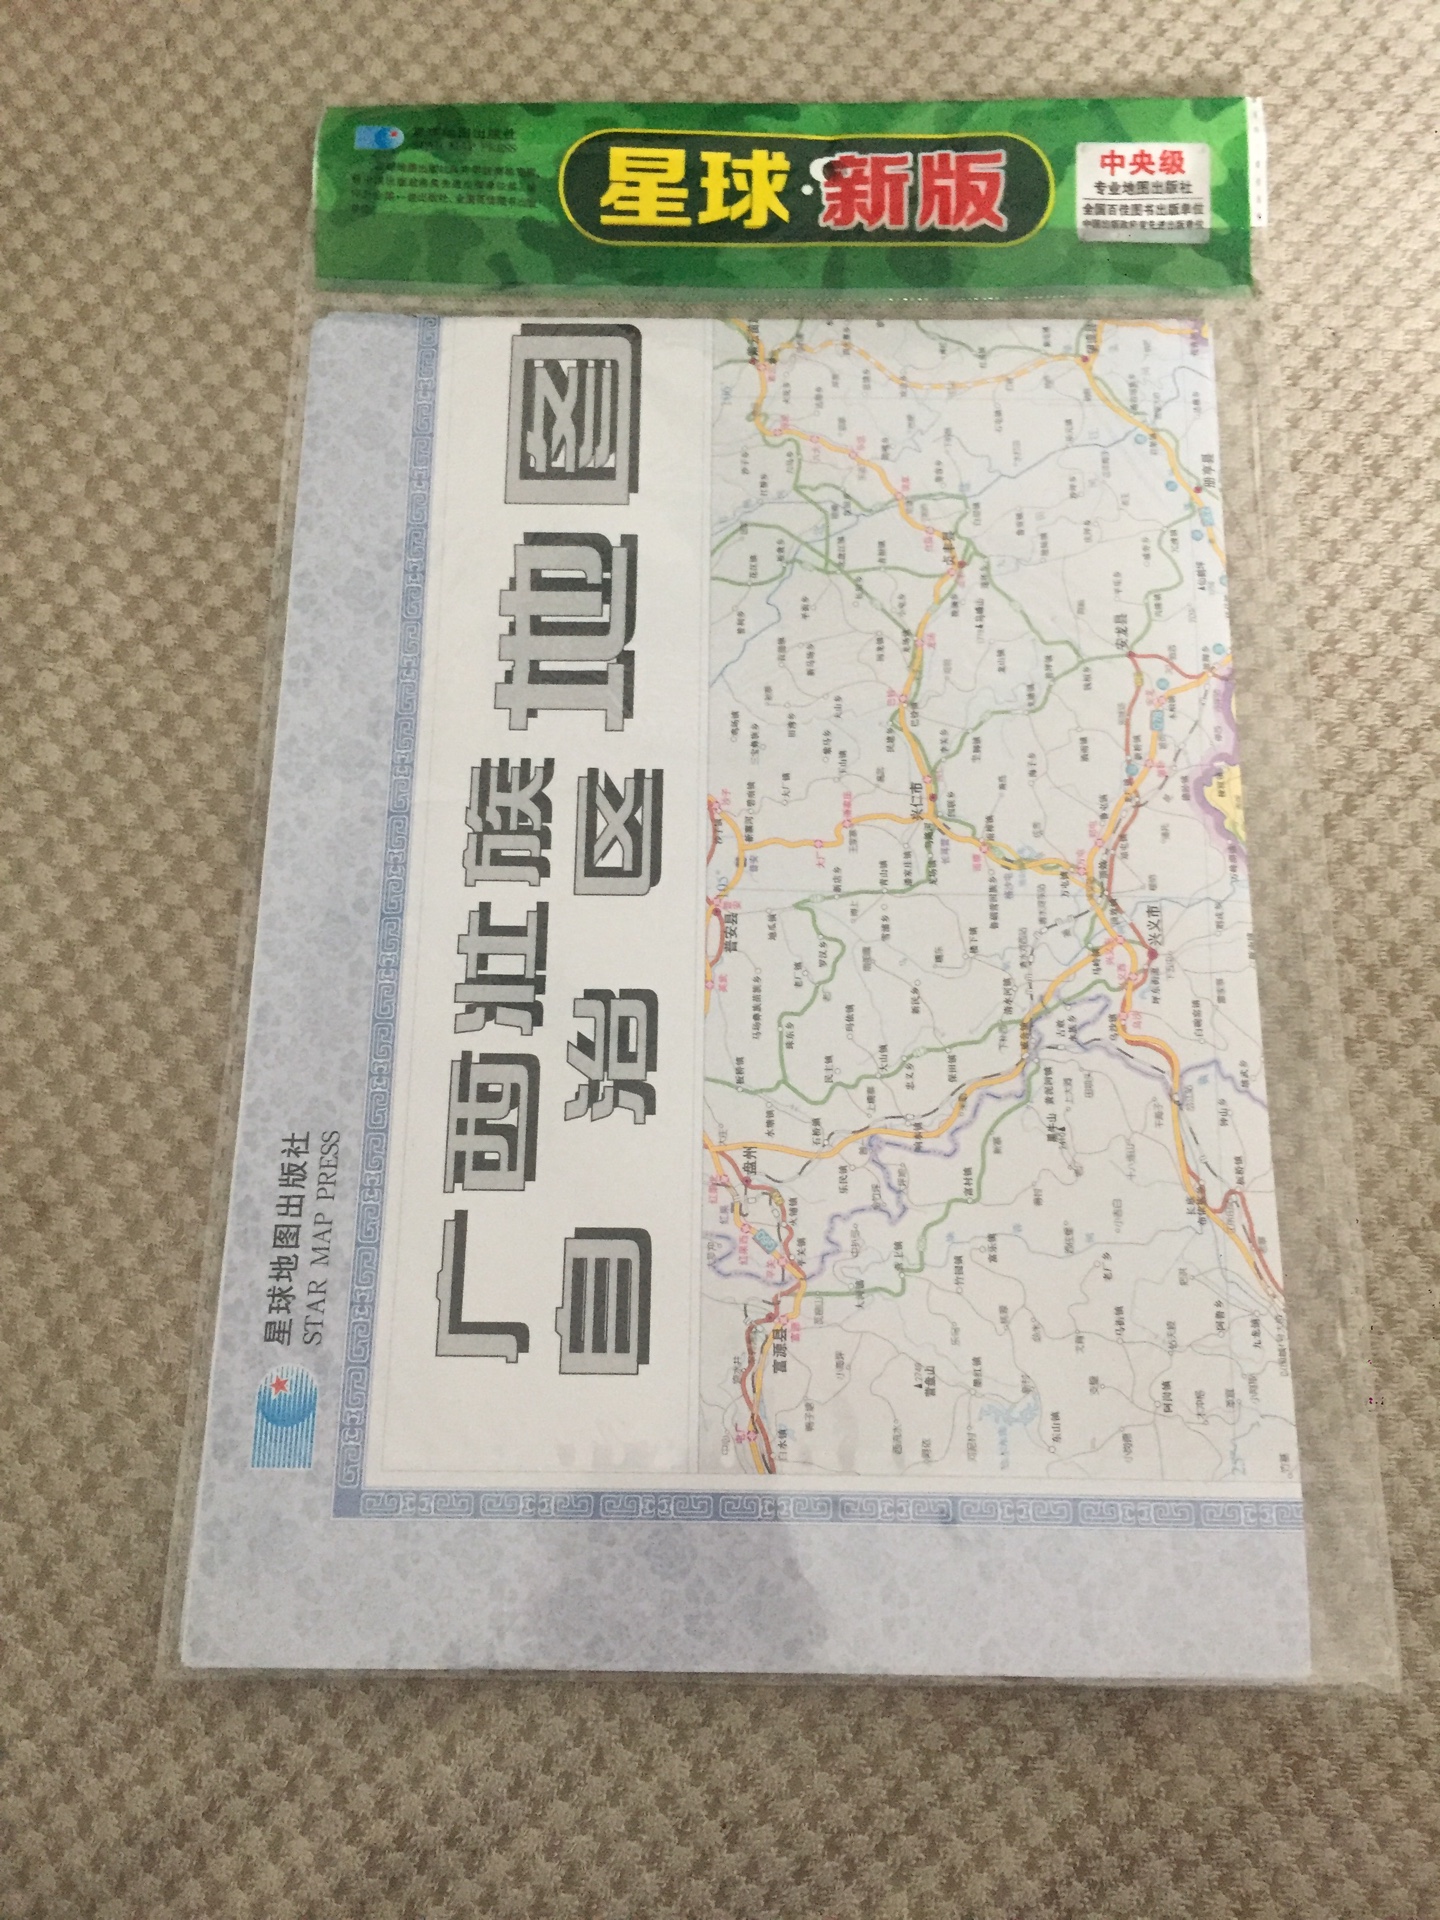 近期准备去广西徒步旅行，备一个纸质地图，方便，直观